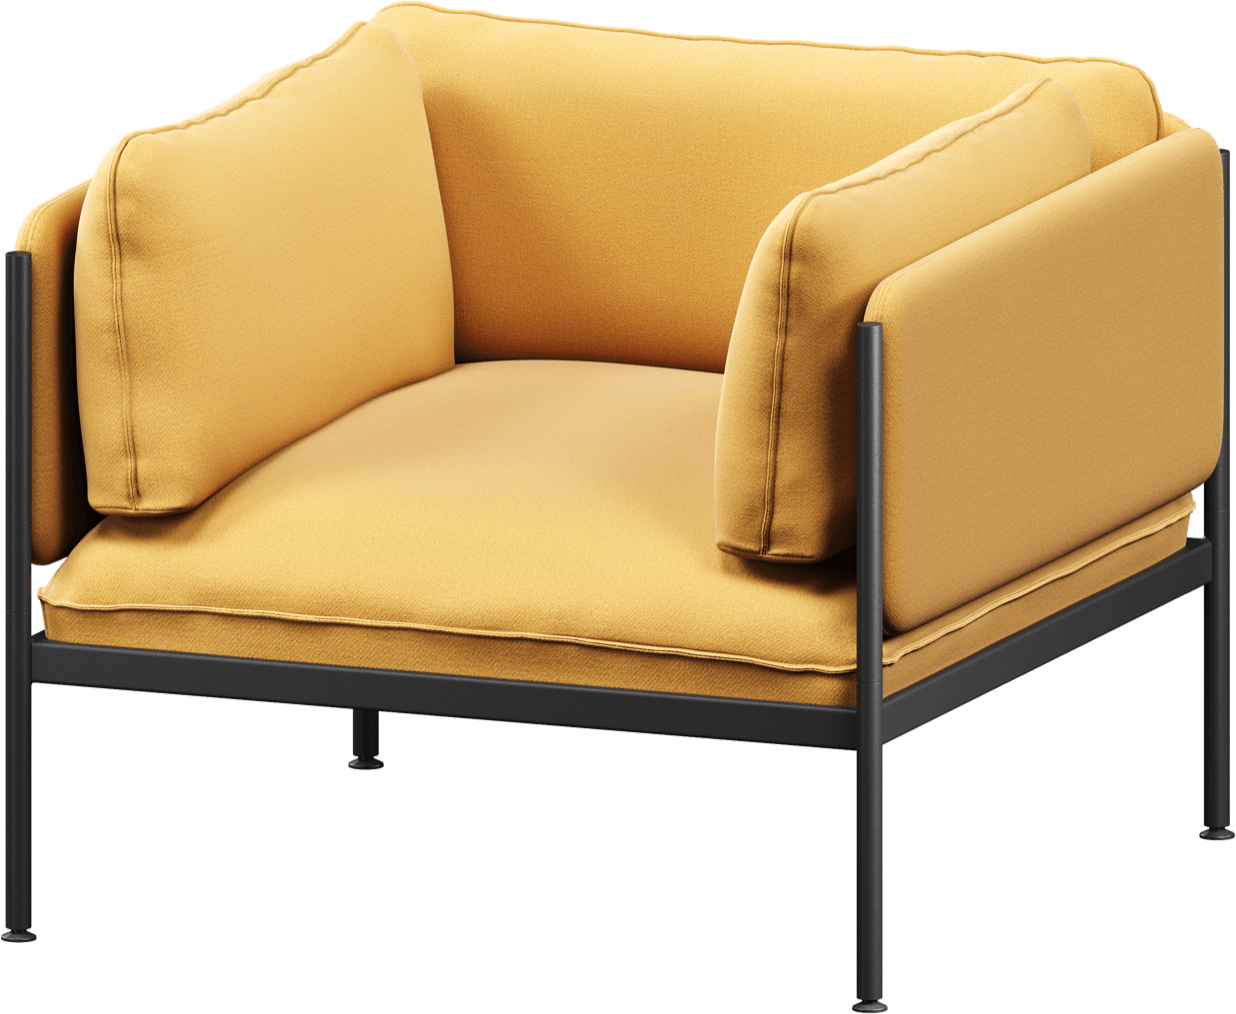 Toom Modular Sessel in Yellow Ochre präsentiert im Onlineshop von KAQTU Design AG. Sessel mit Armlehnen ist von Noo.ma